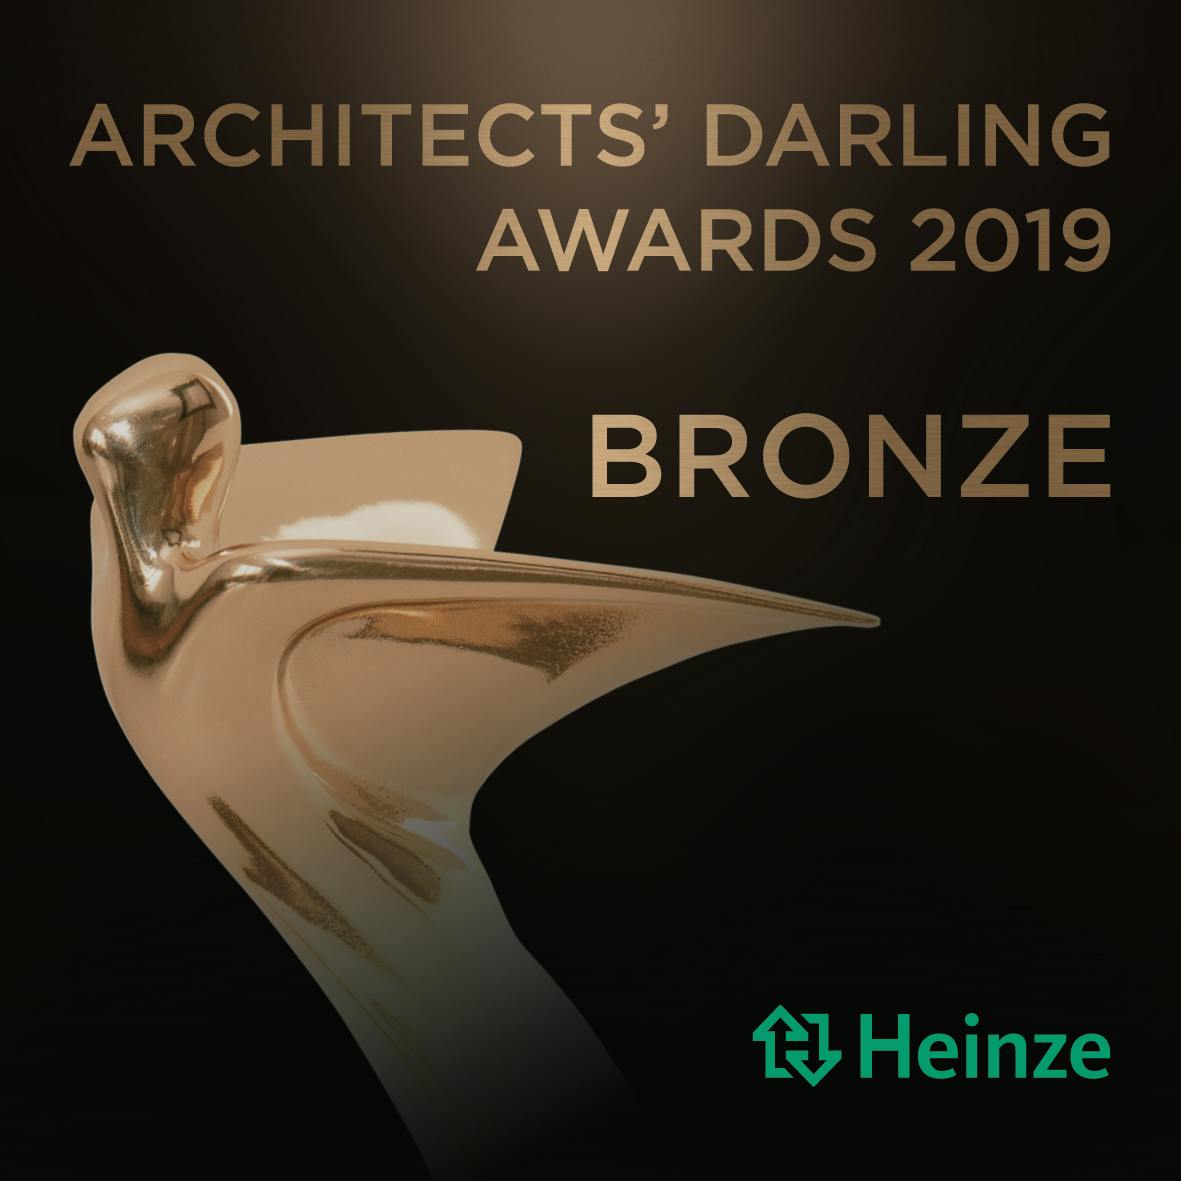 Cosentino’s C-Magazine wird mit dem Bronze Architect’s Darling Award 2019 ausgezeichnet.